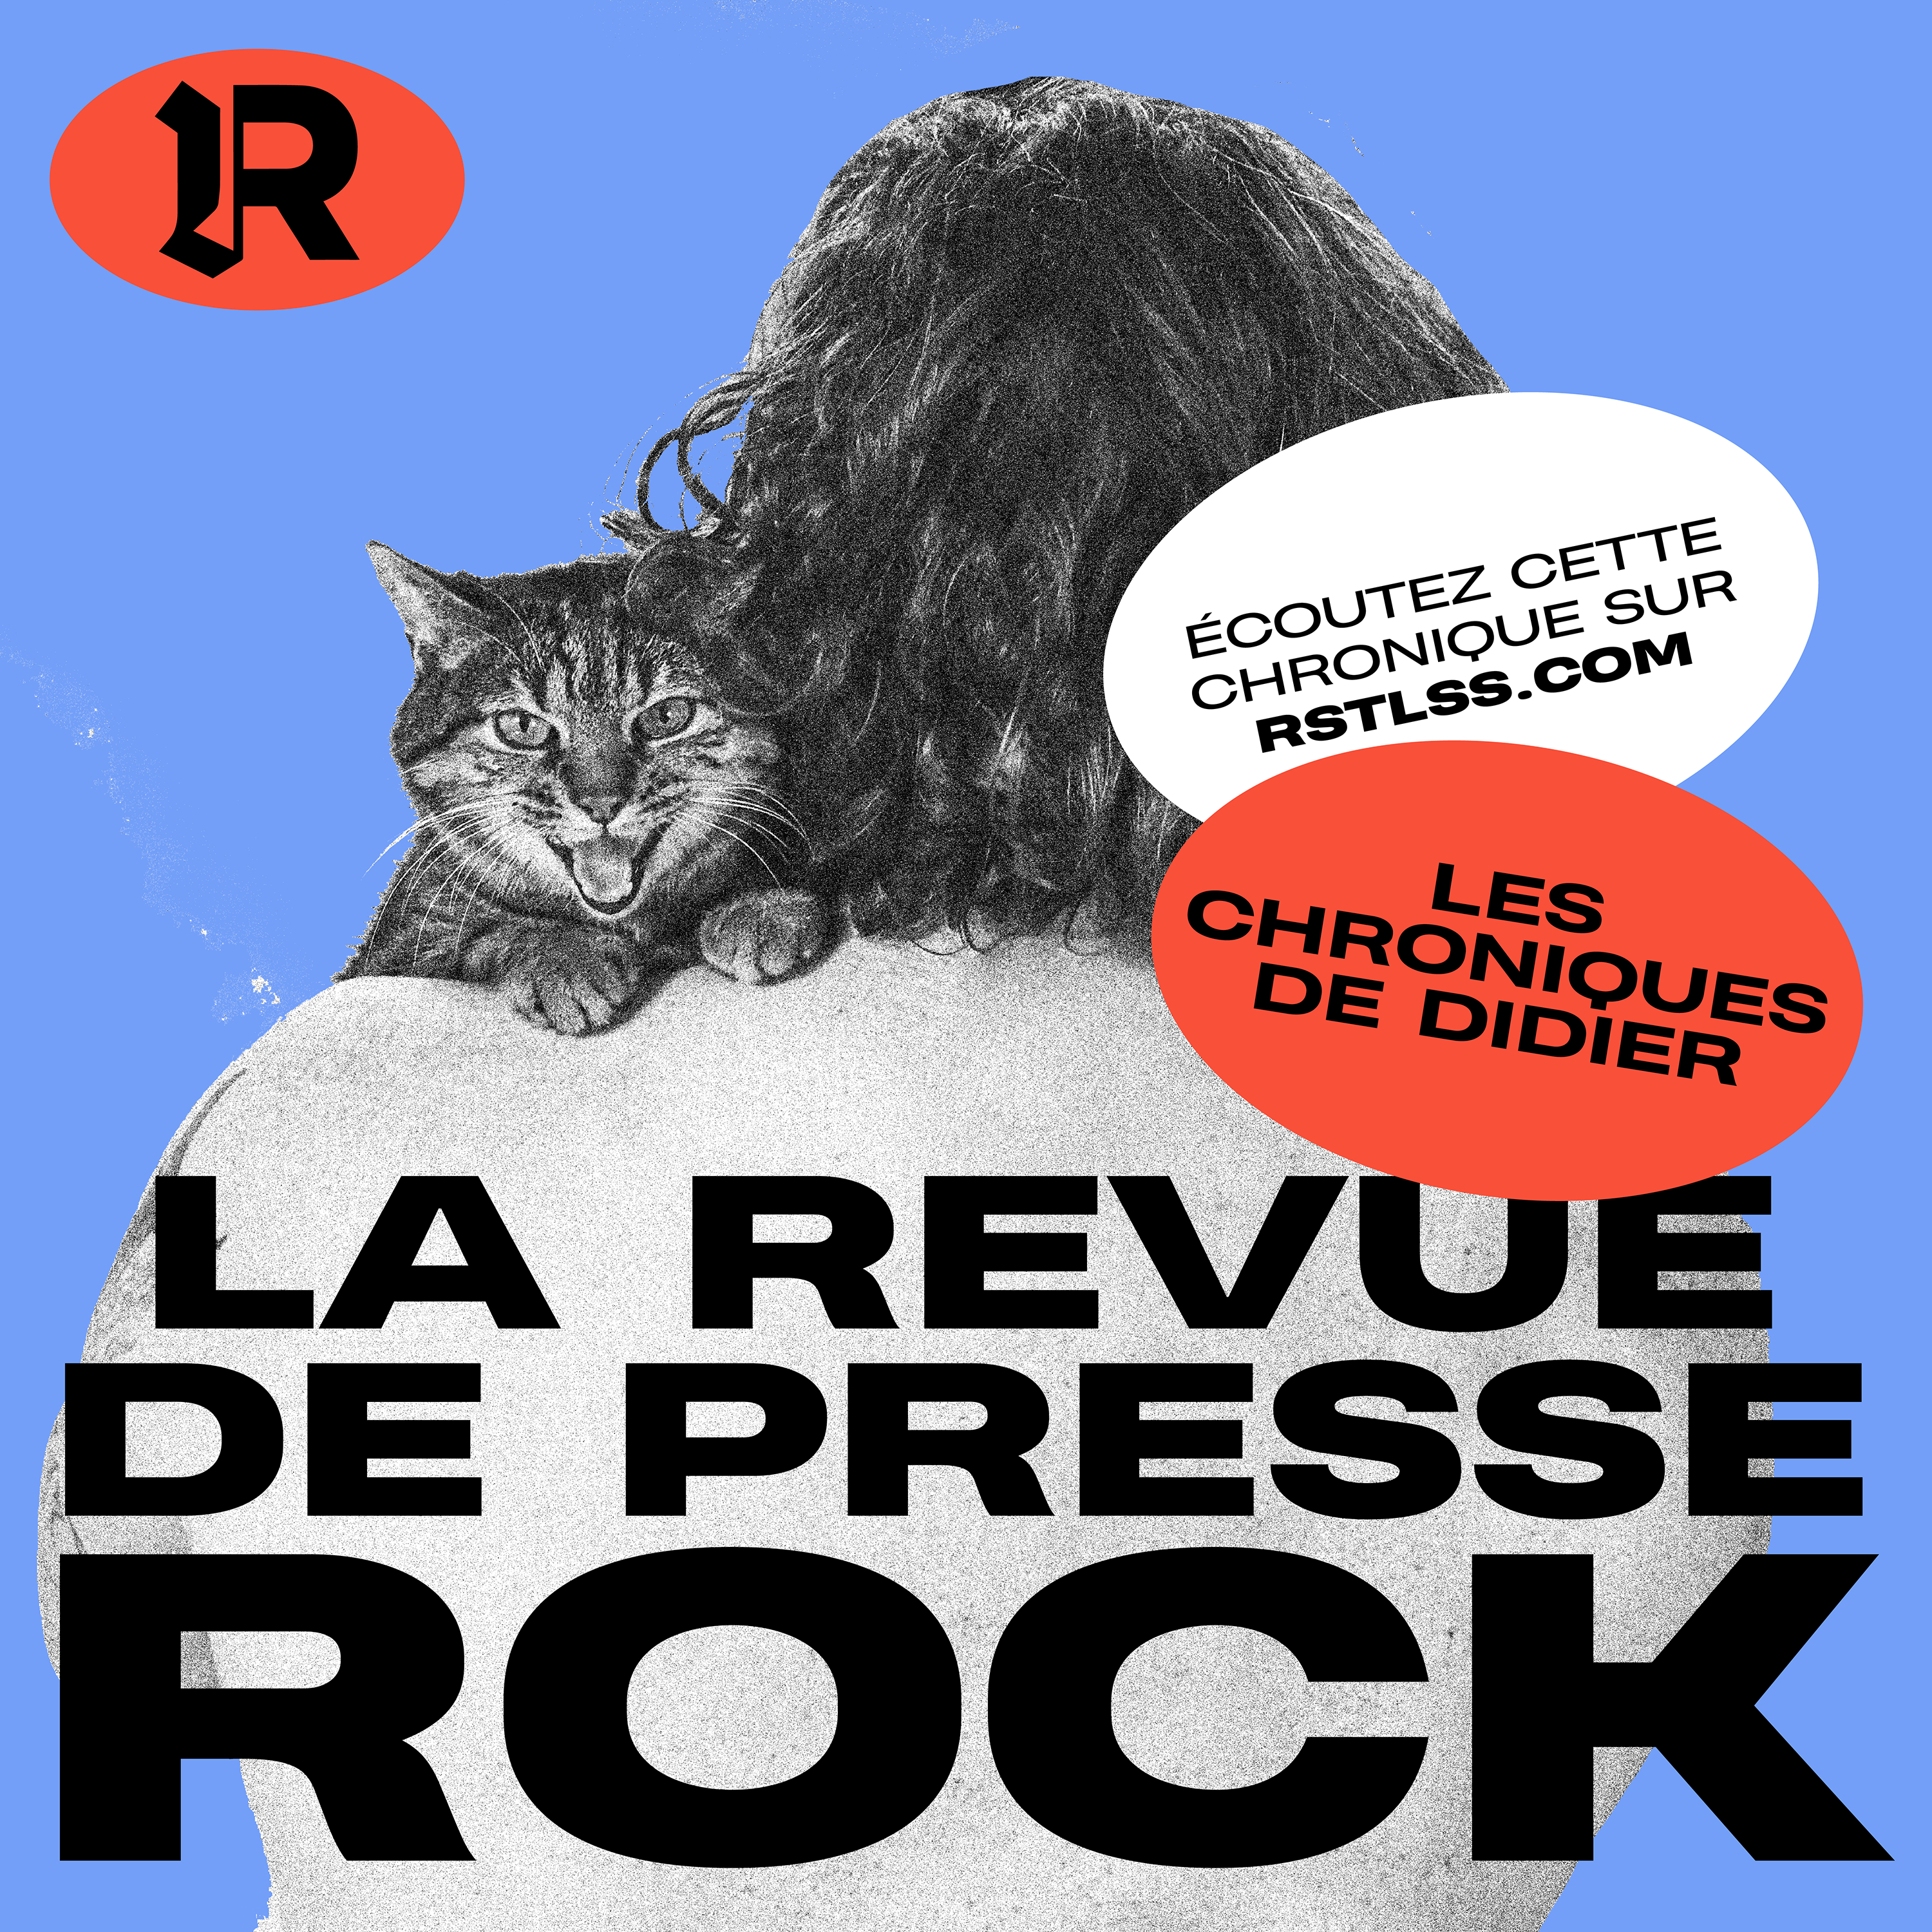 LA REVUE DE PRESSE ROCK #43 - Converge, Suicidal Tendencies, Ice T, Soundgarden